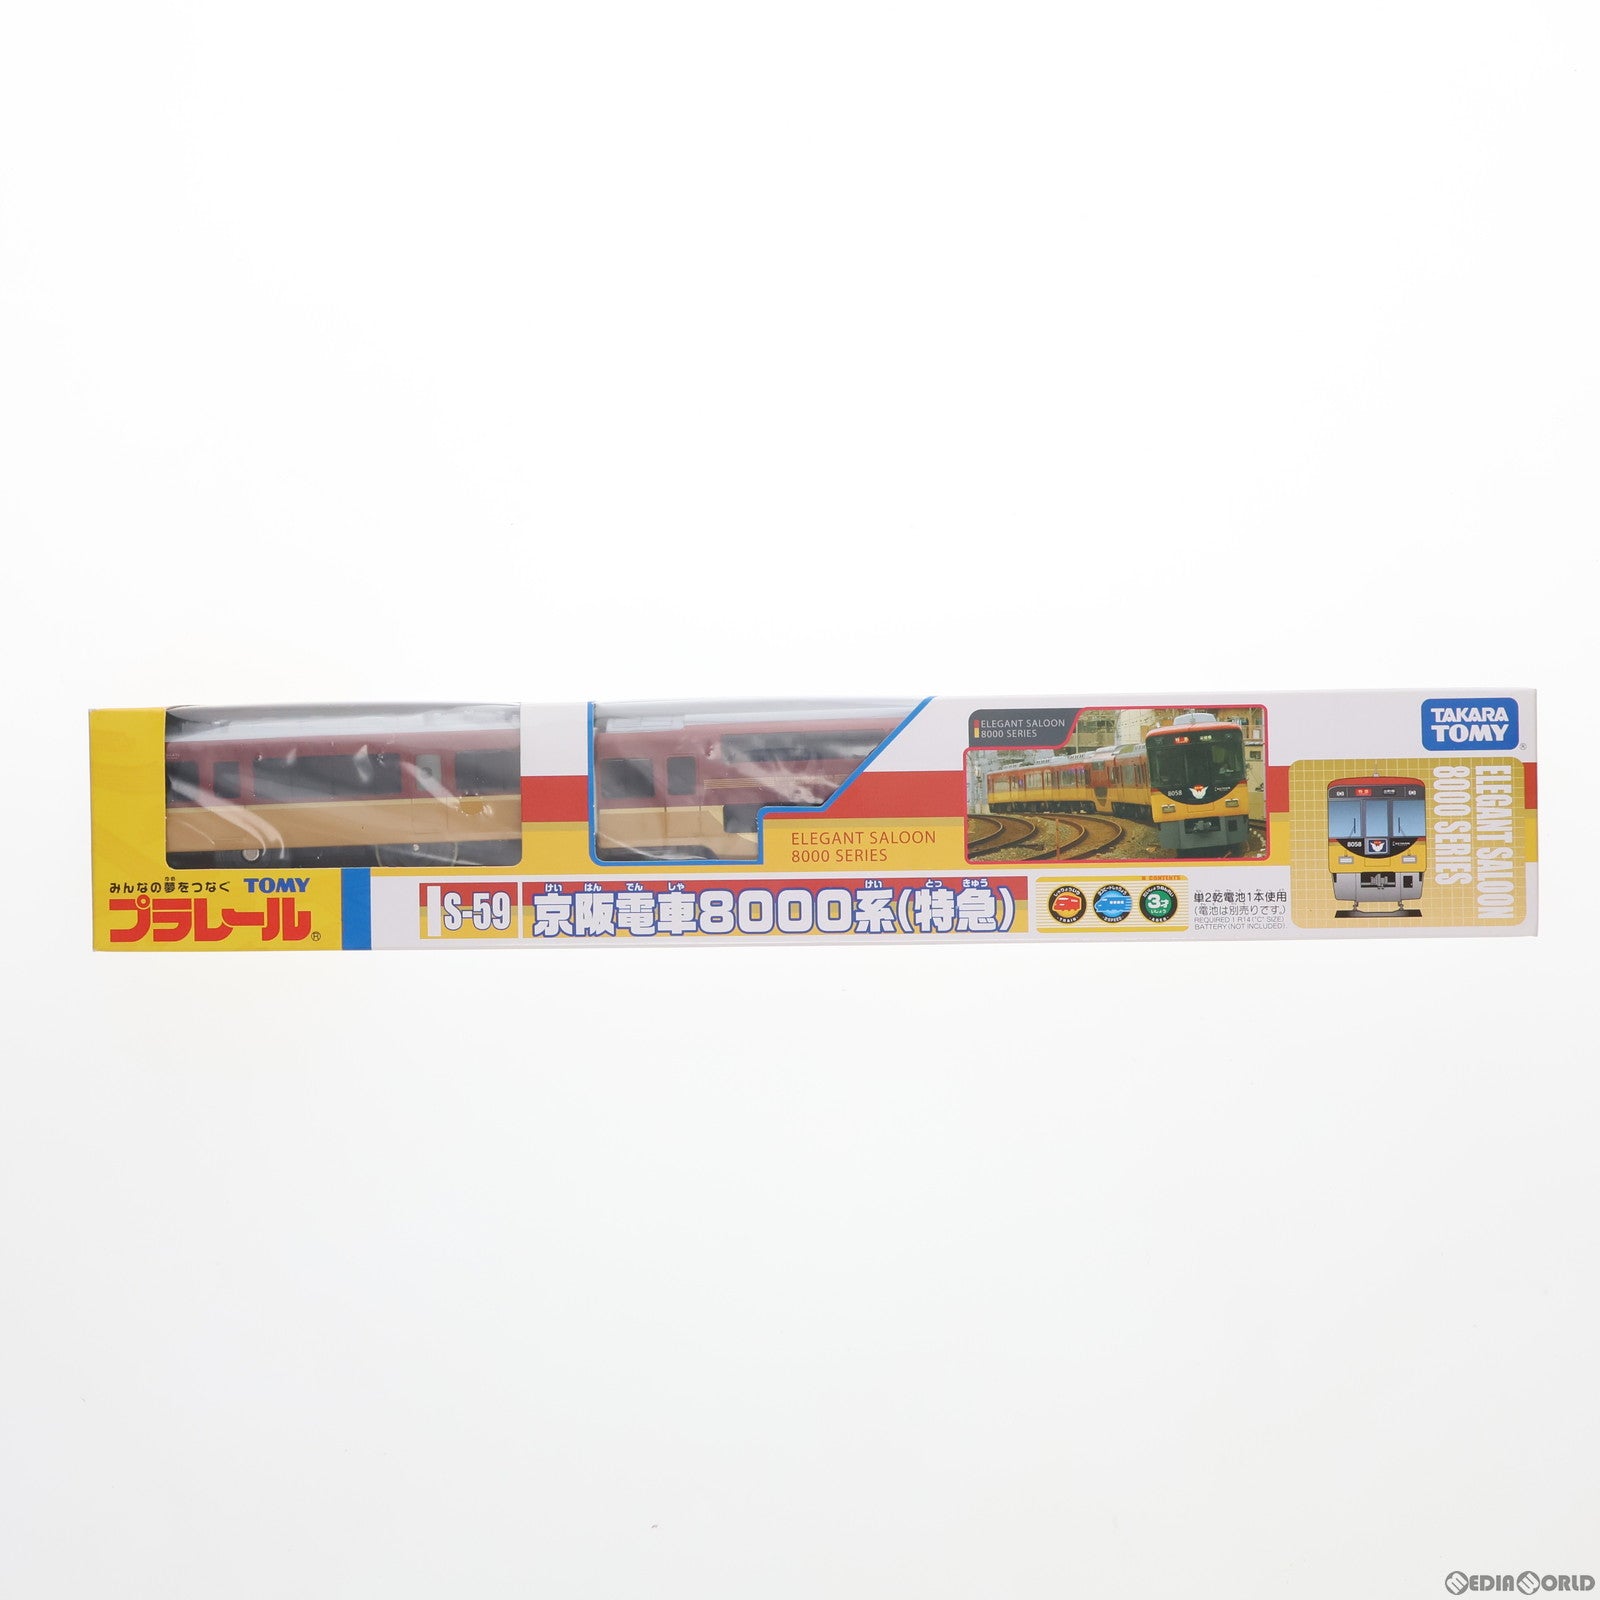 【中古即納】[RWM]プラレール S-59 京阪電車8000系(特急) 3両セット(動力付き) 鉄道模型(20081227)